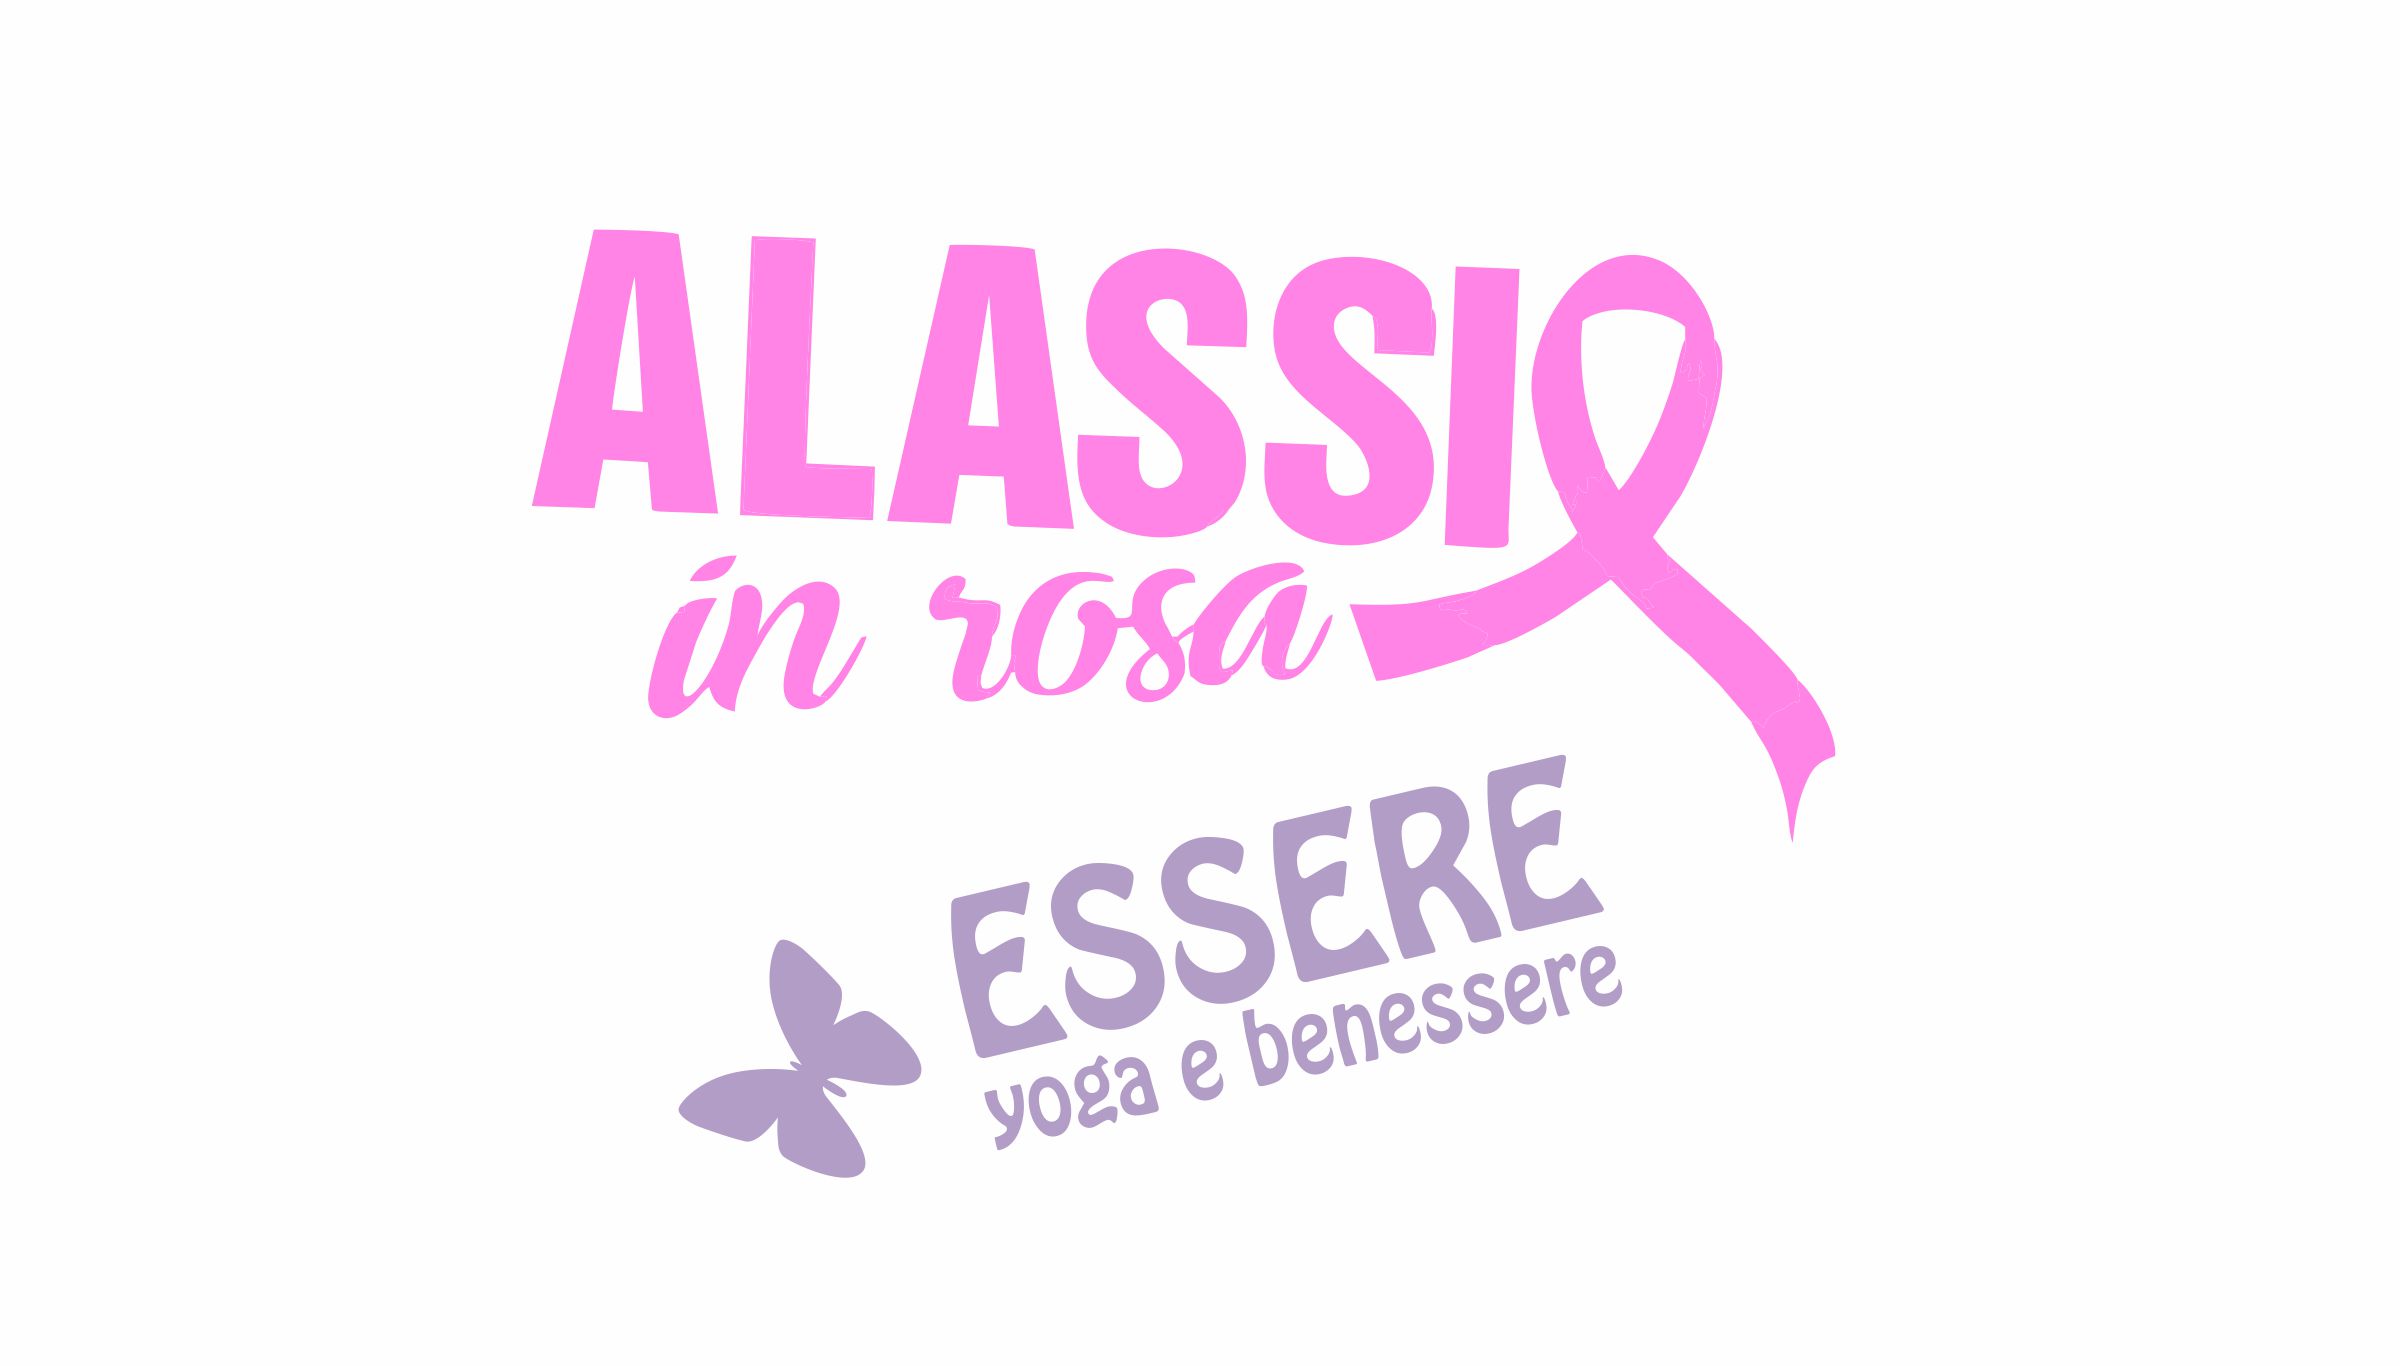 yoga-rosa-alassio-molo-gratuito-free-essere-benessere-lucia-ragazzi-esperienz-wellness-wellbeing-città-donne-prevenzione-airc-tumori-social